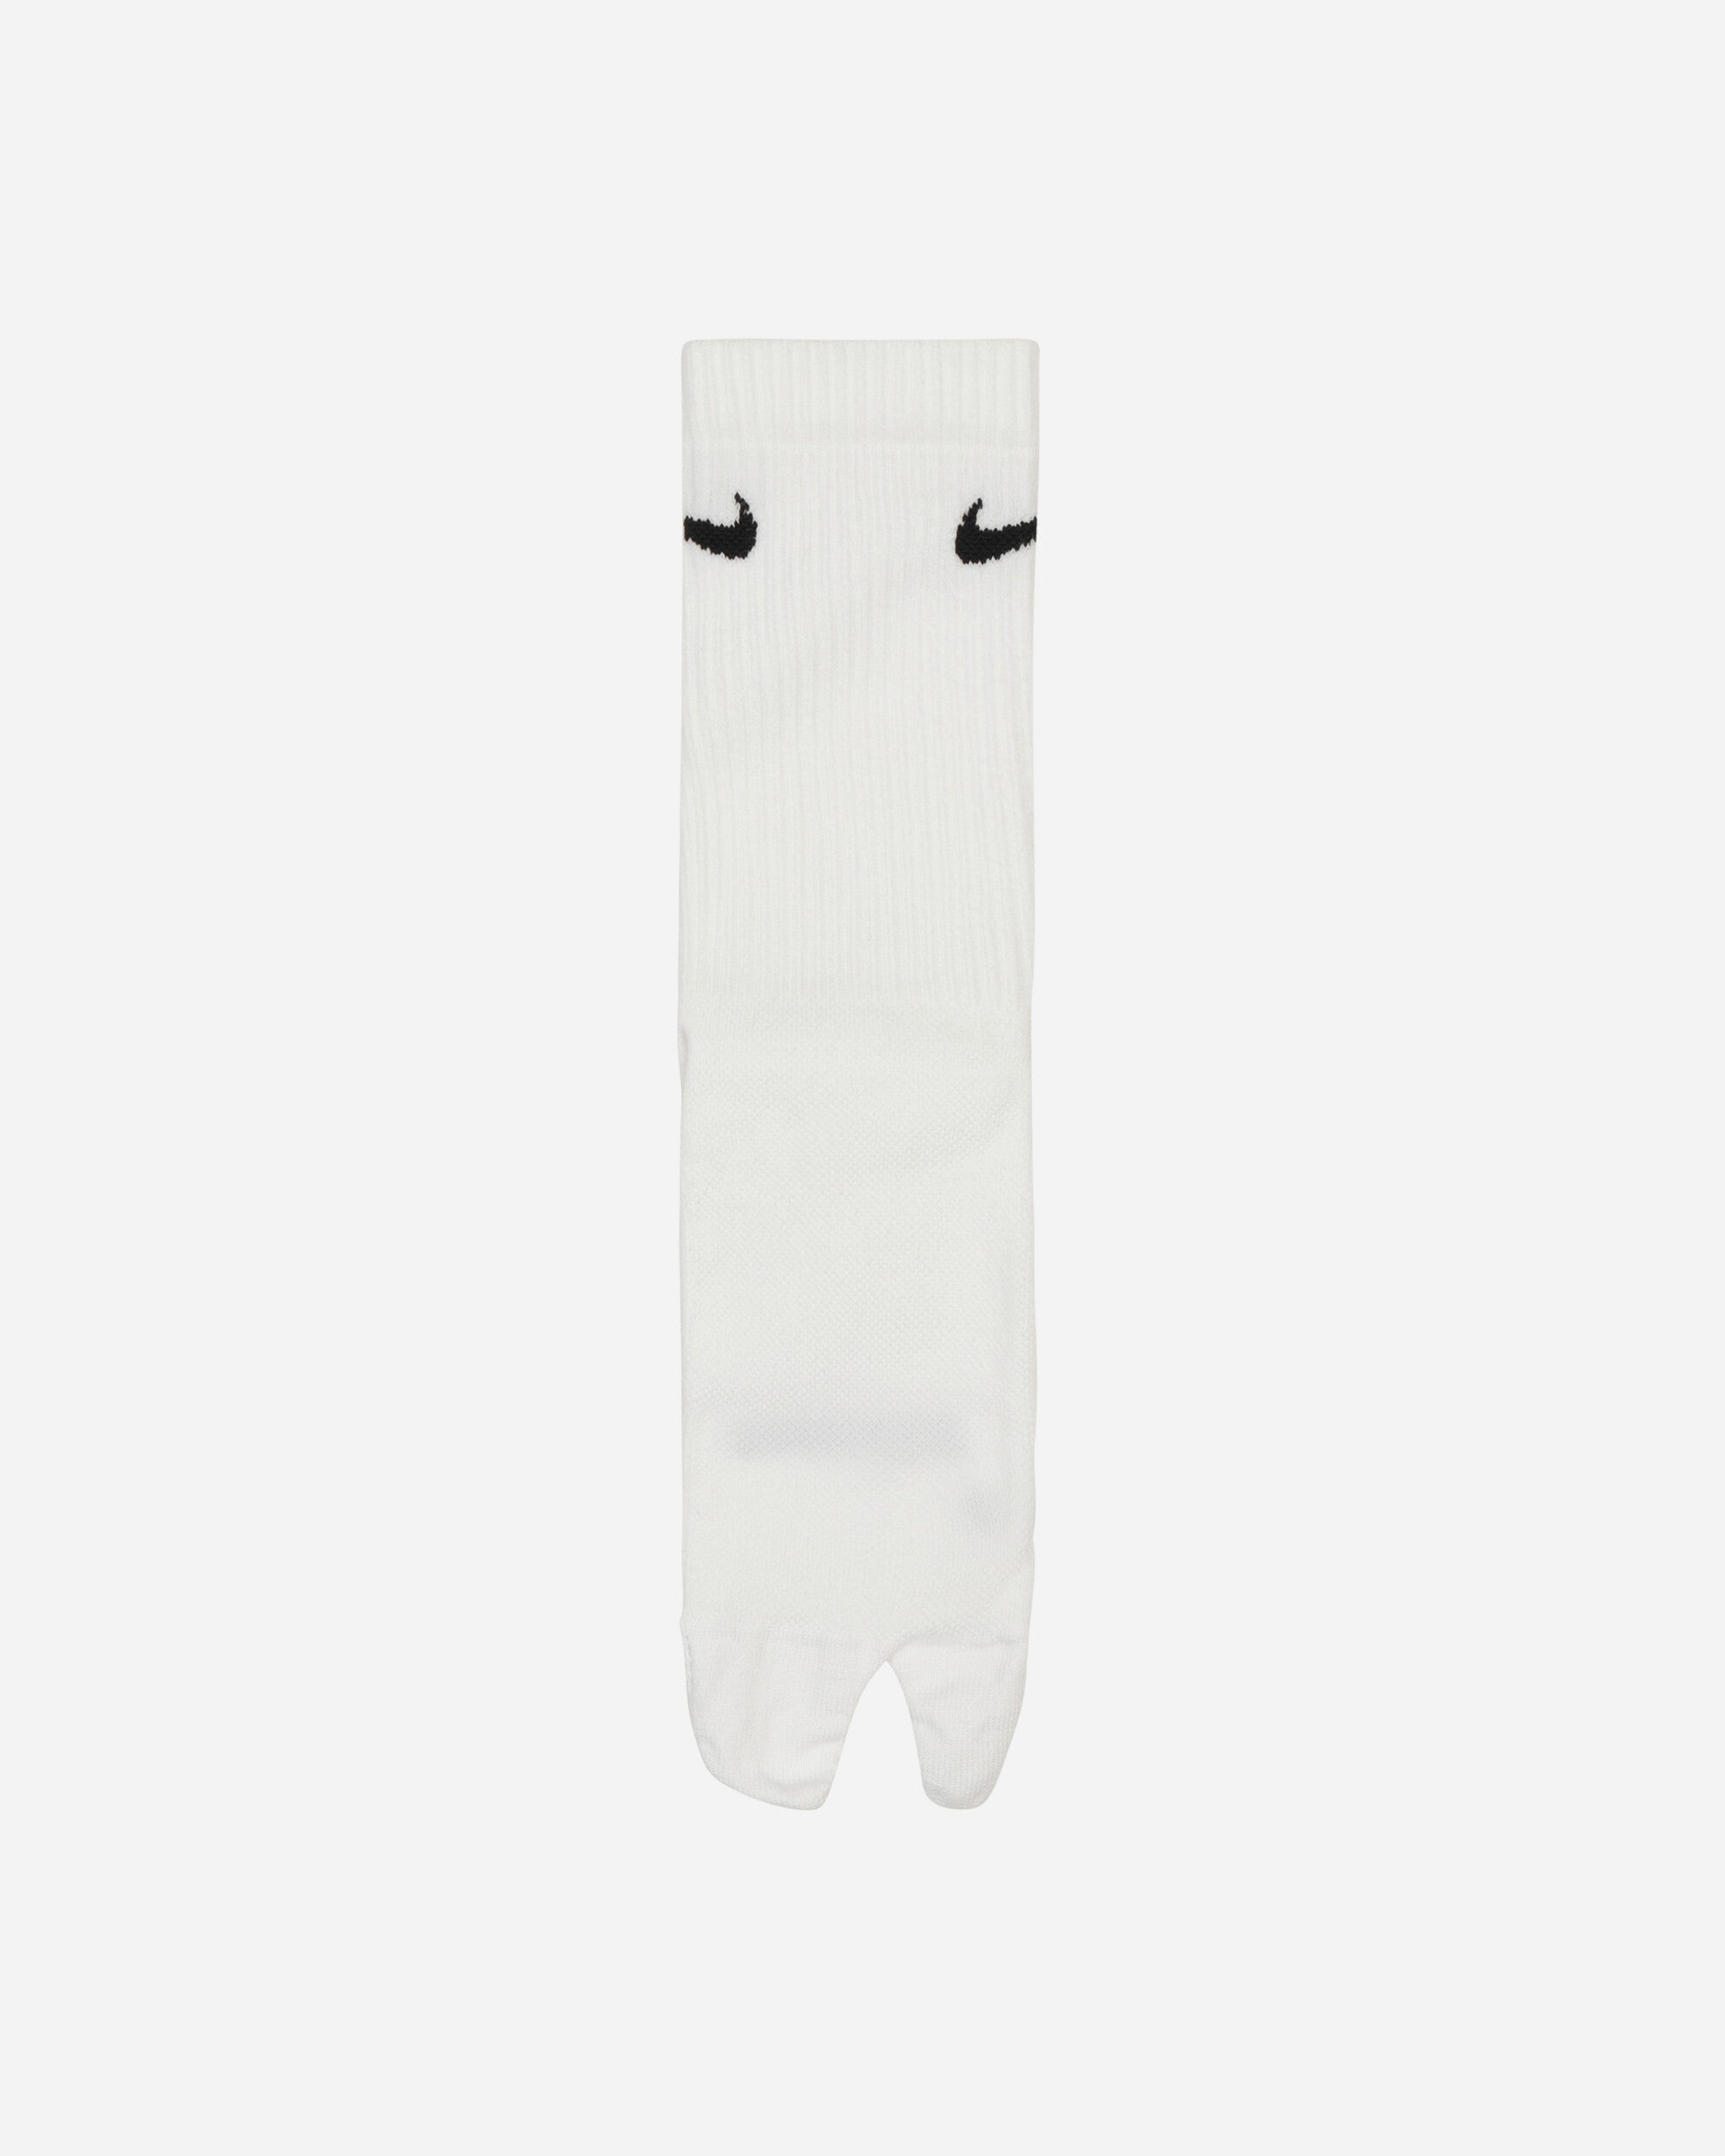 Nike U Nk Ed  Pls Ltwt Crw 160 Tab White/Black Underwear Socks DX1158-100